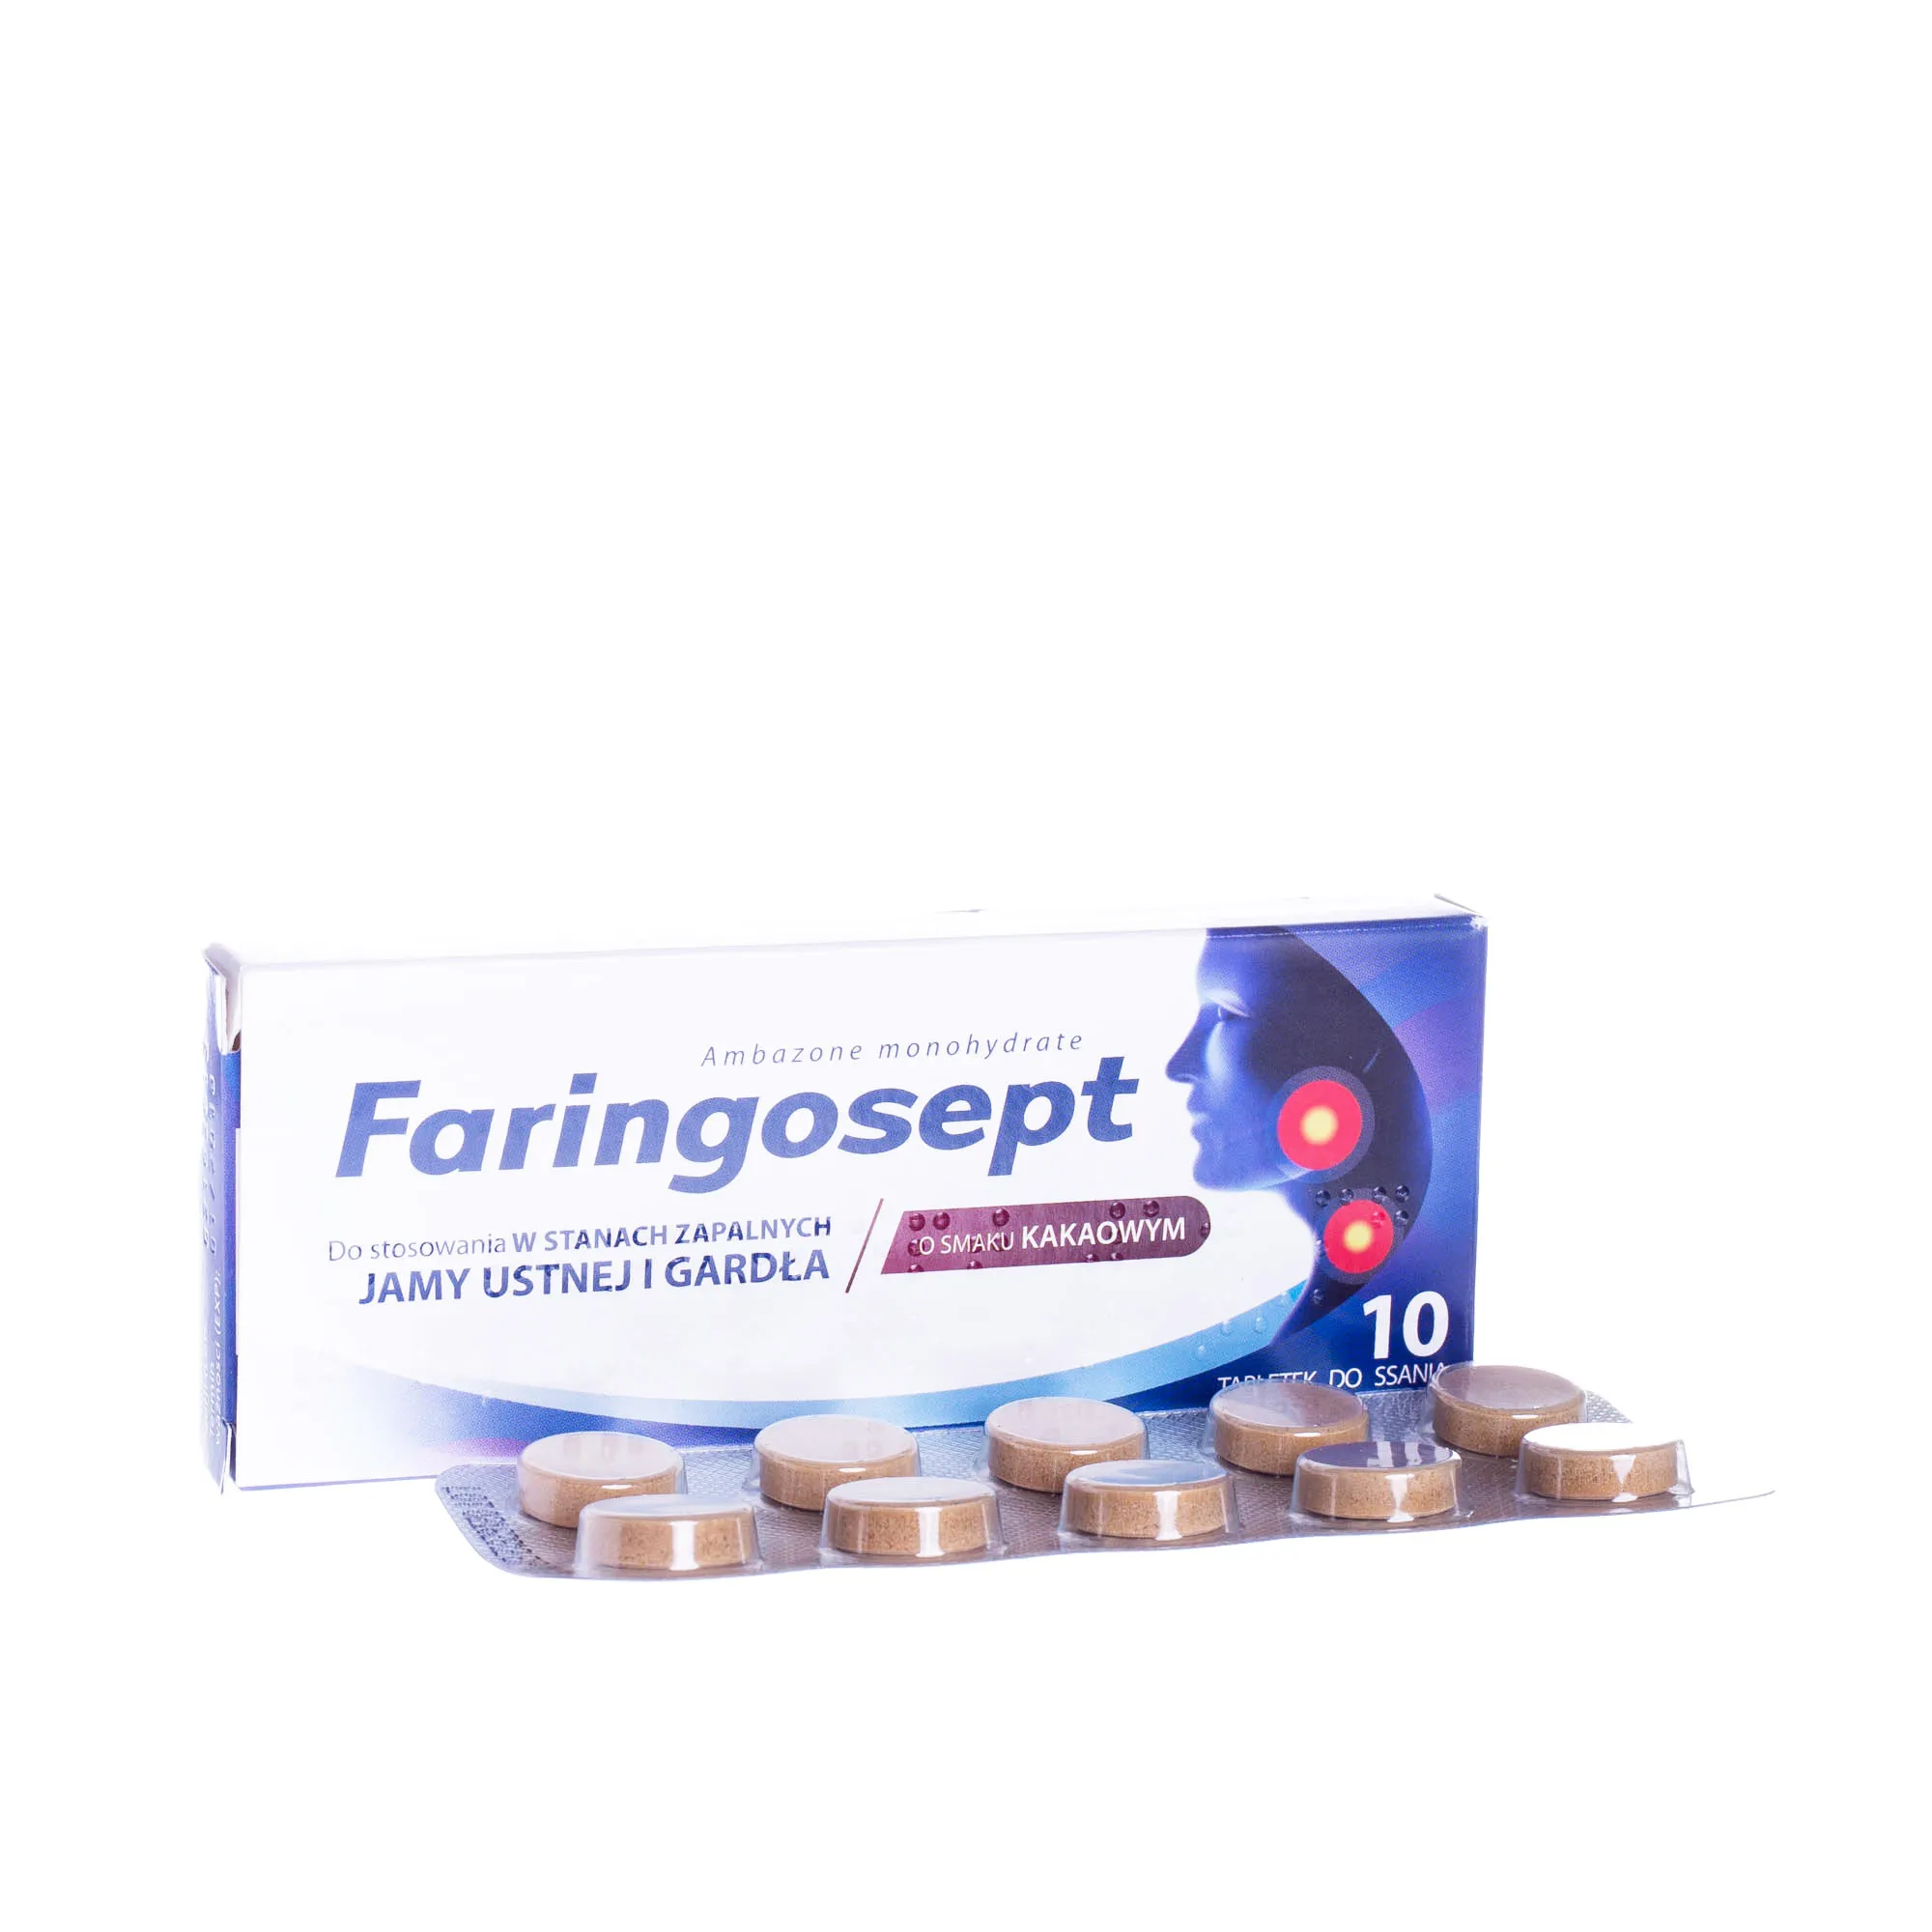 Faringosept - 10 tabletek do ssania do stosowania w stanach zapalnych, smak kakaowy 